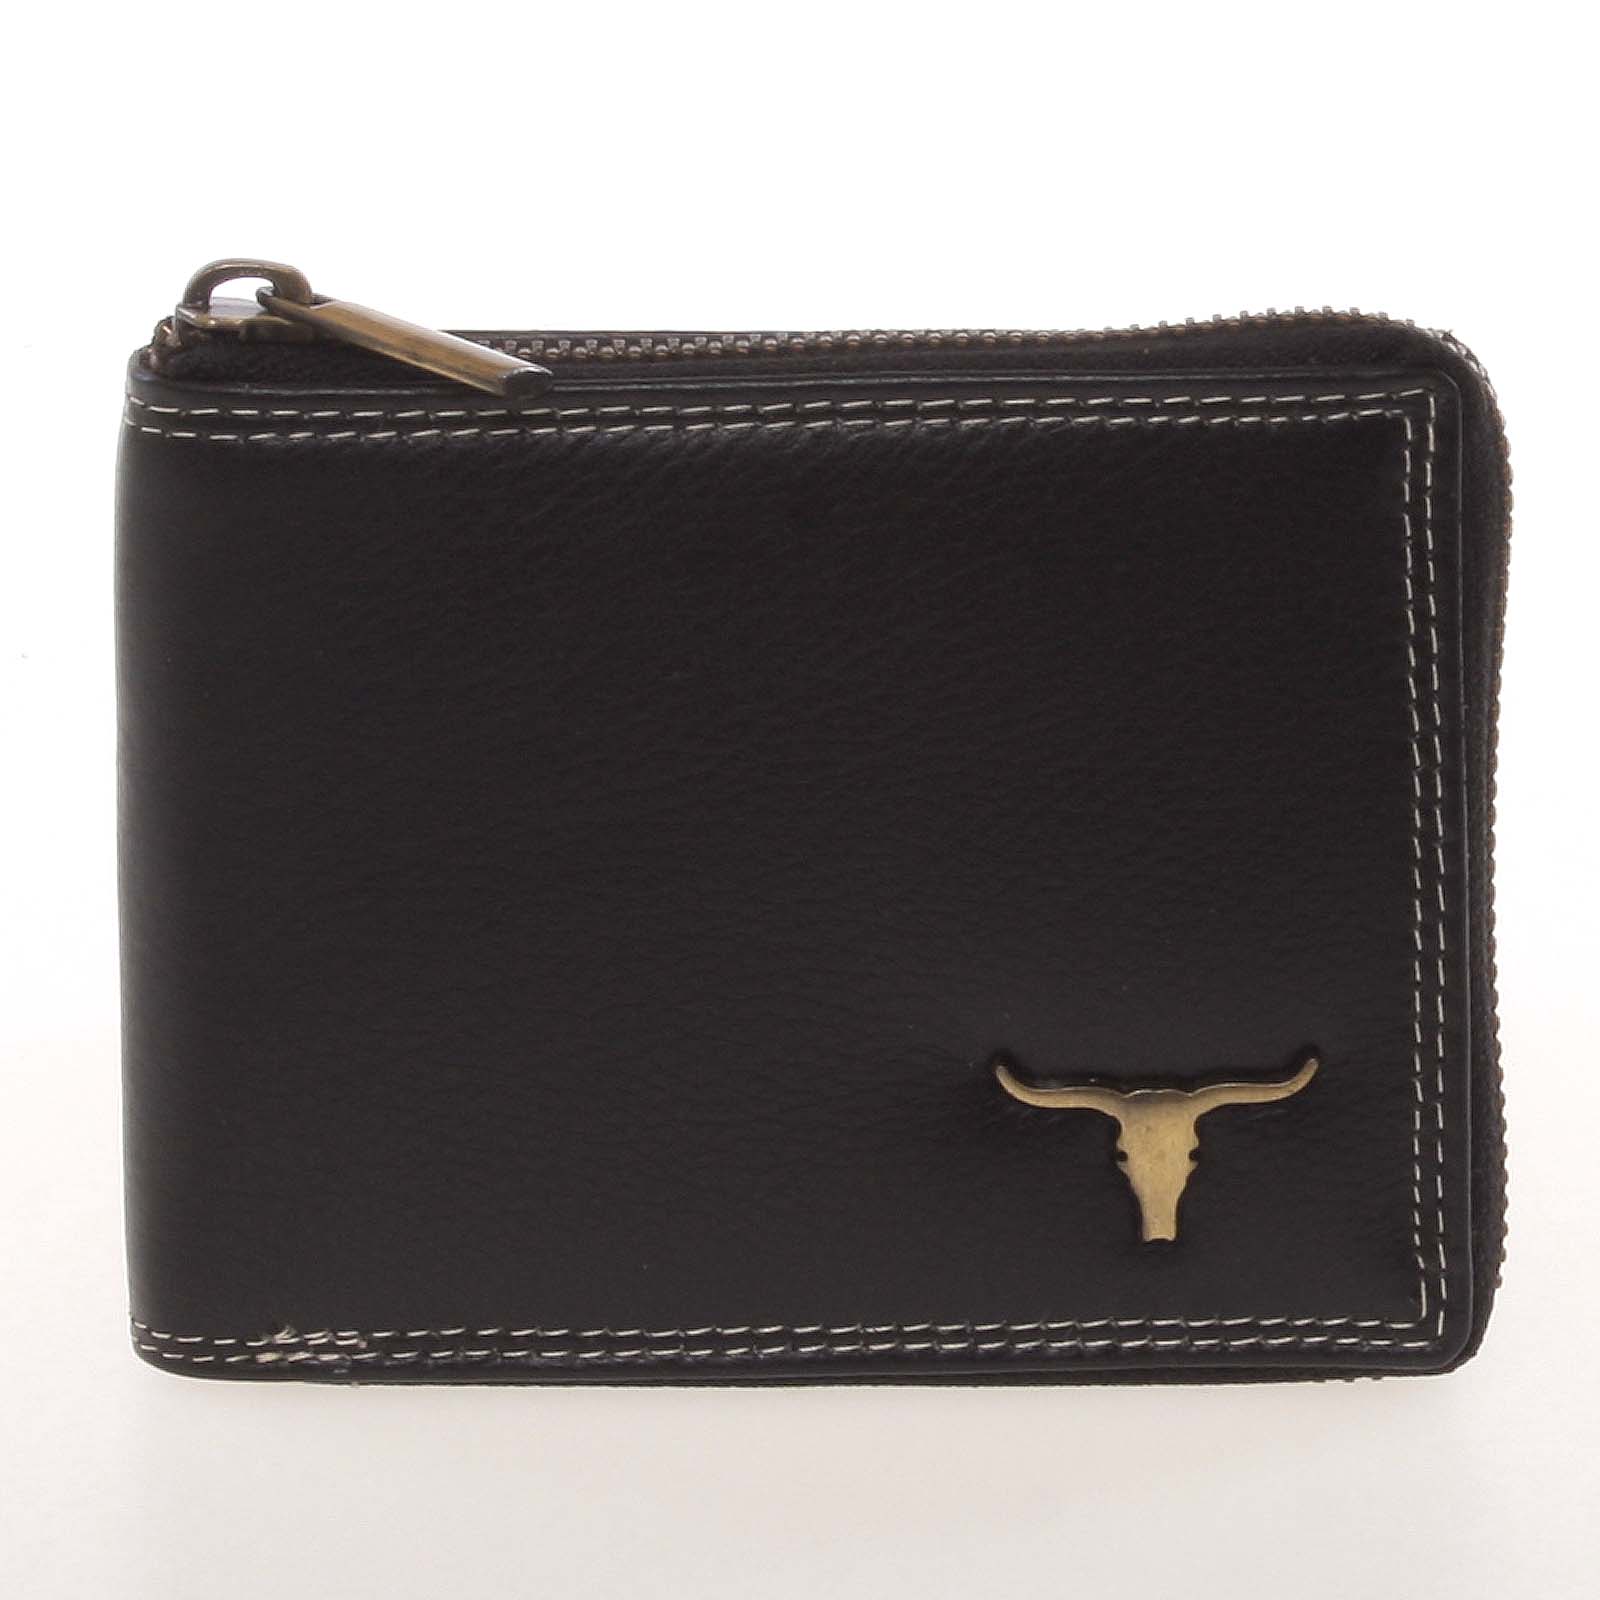 Módní pánská kožená peněženka na zip černá - BUFFALO Derrall